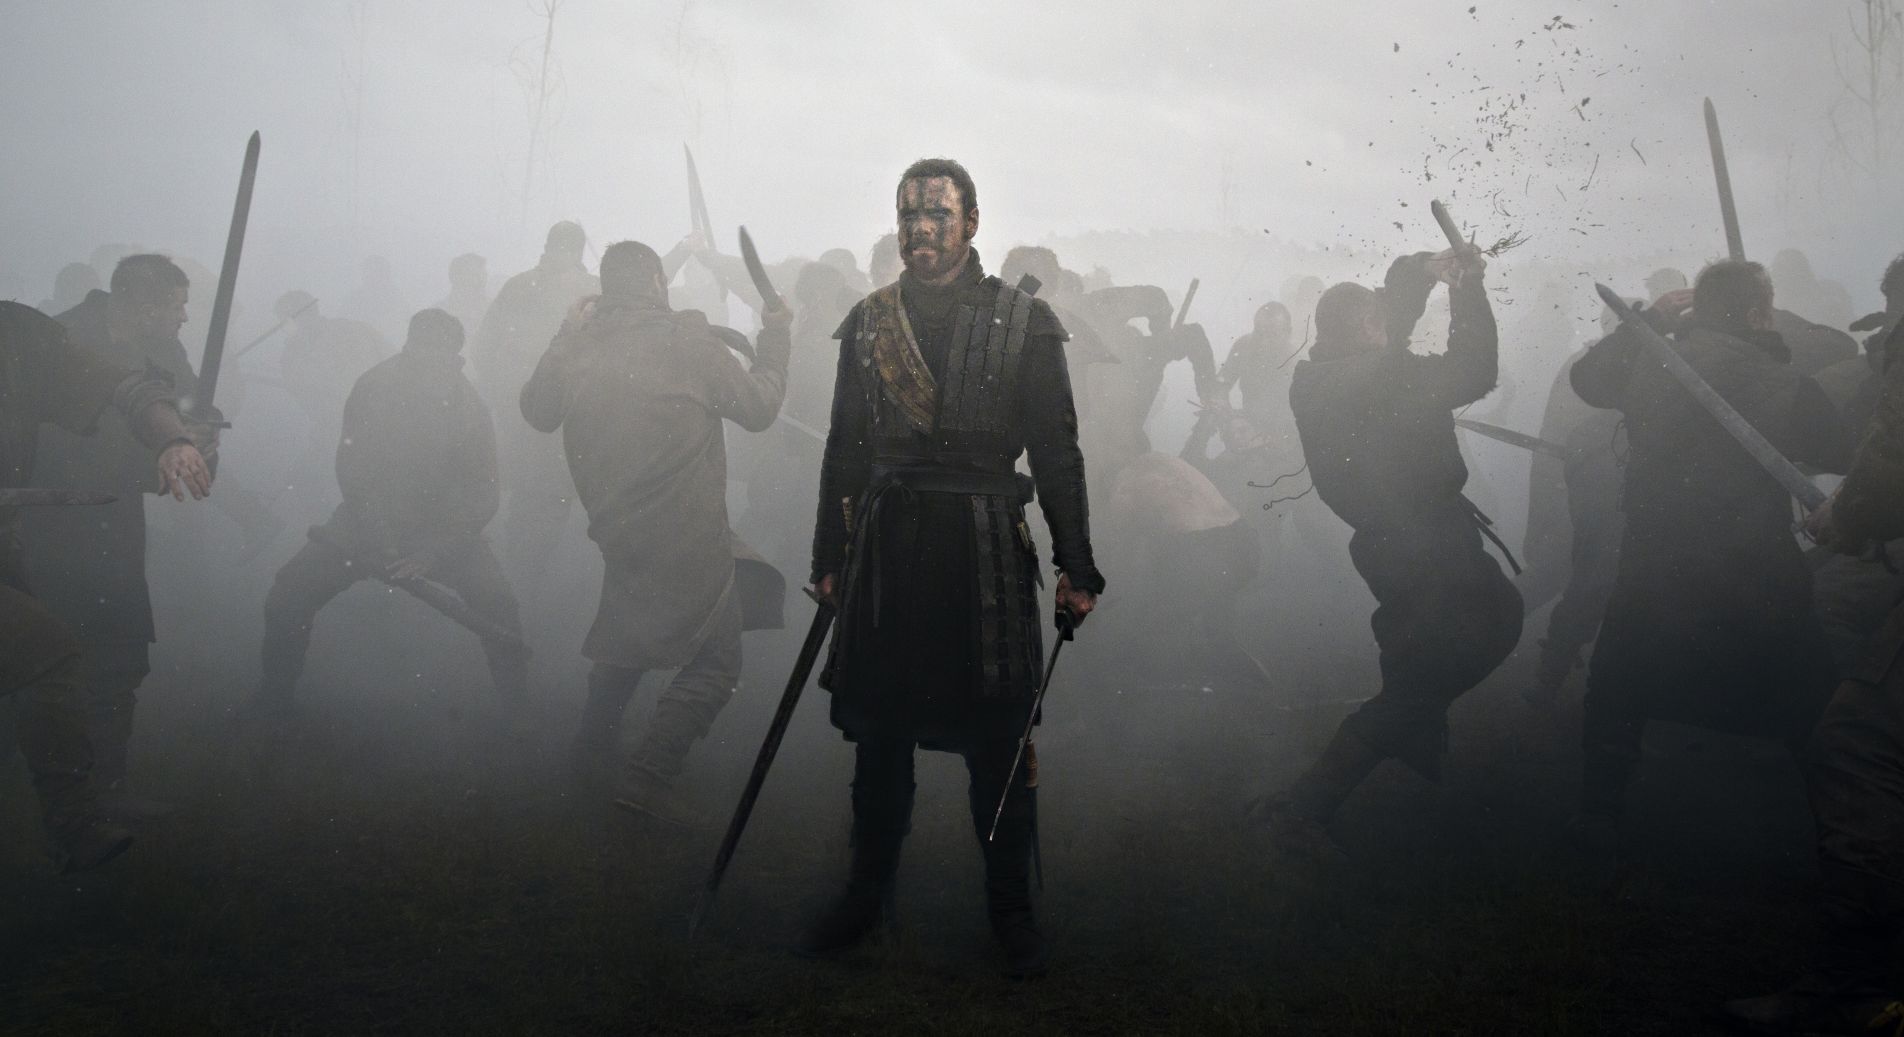 Battle scene with Fassbender in Macbeth